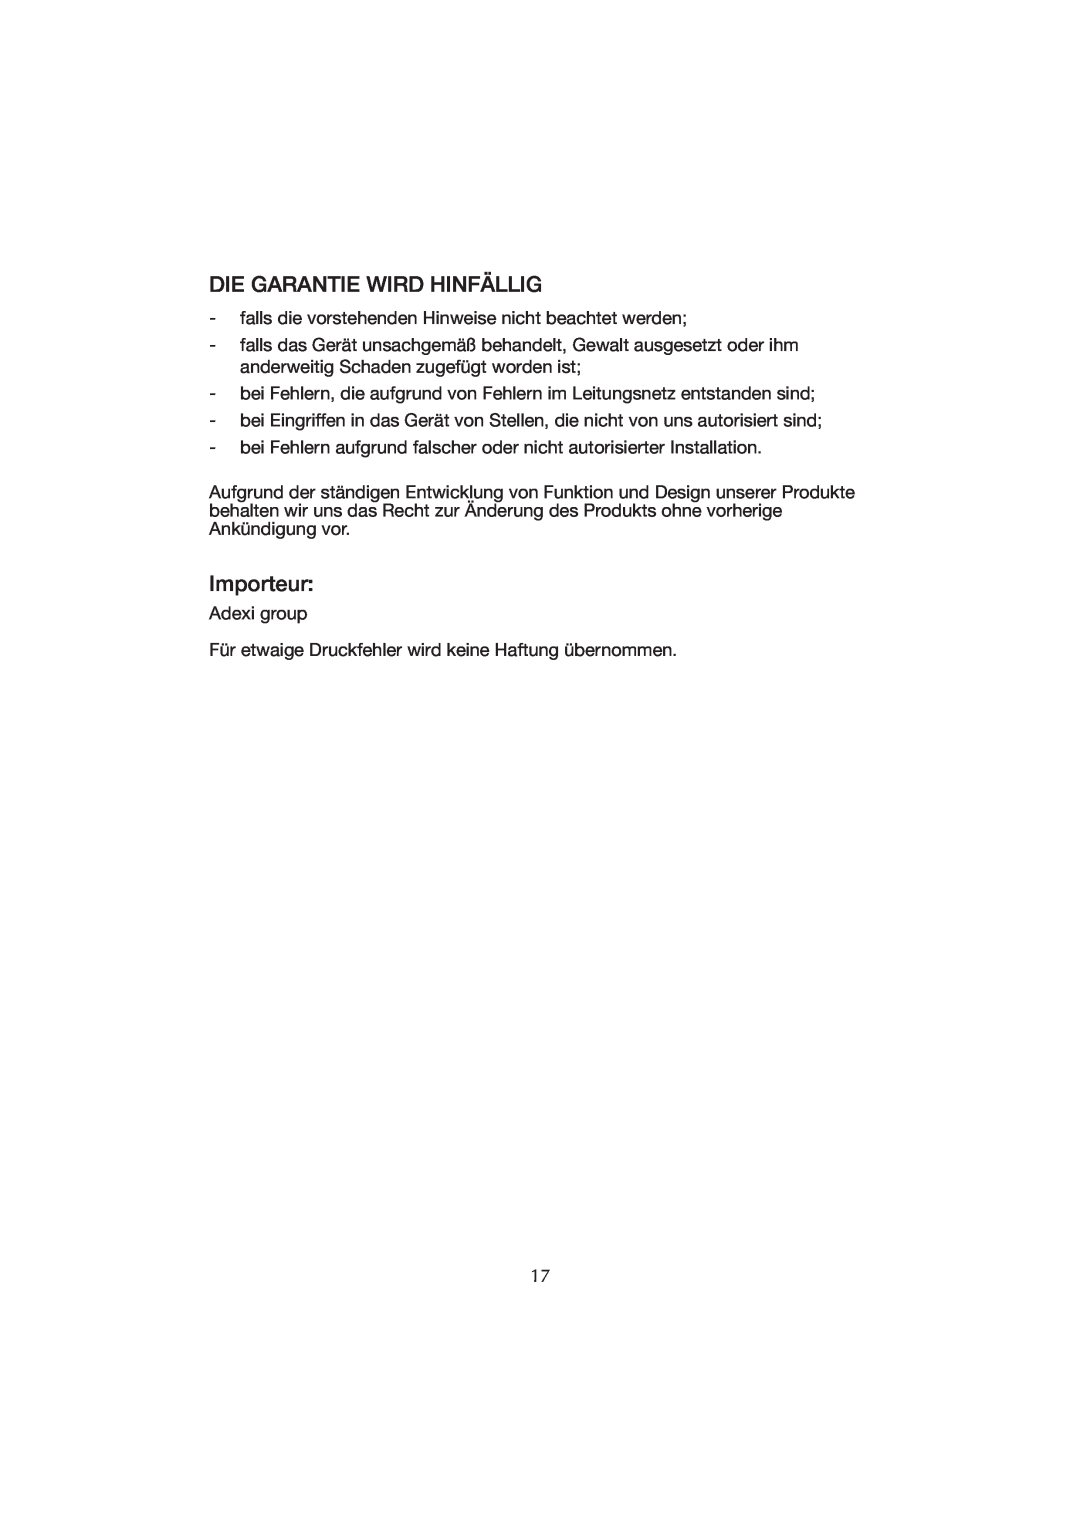 Melissa WK-222 manual Die Garantie Wird Hinfällig, Importeur 